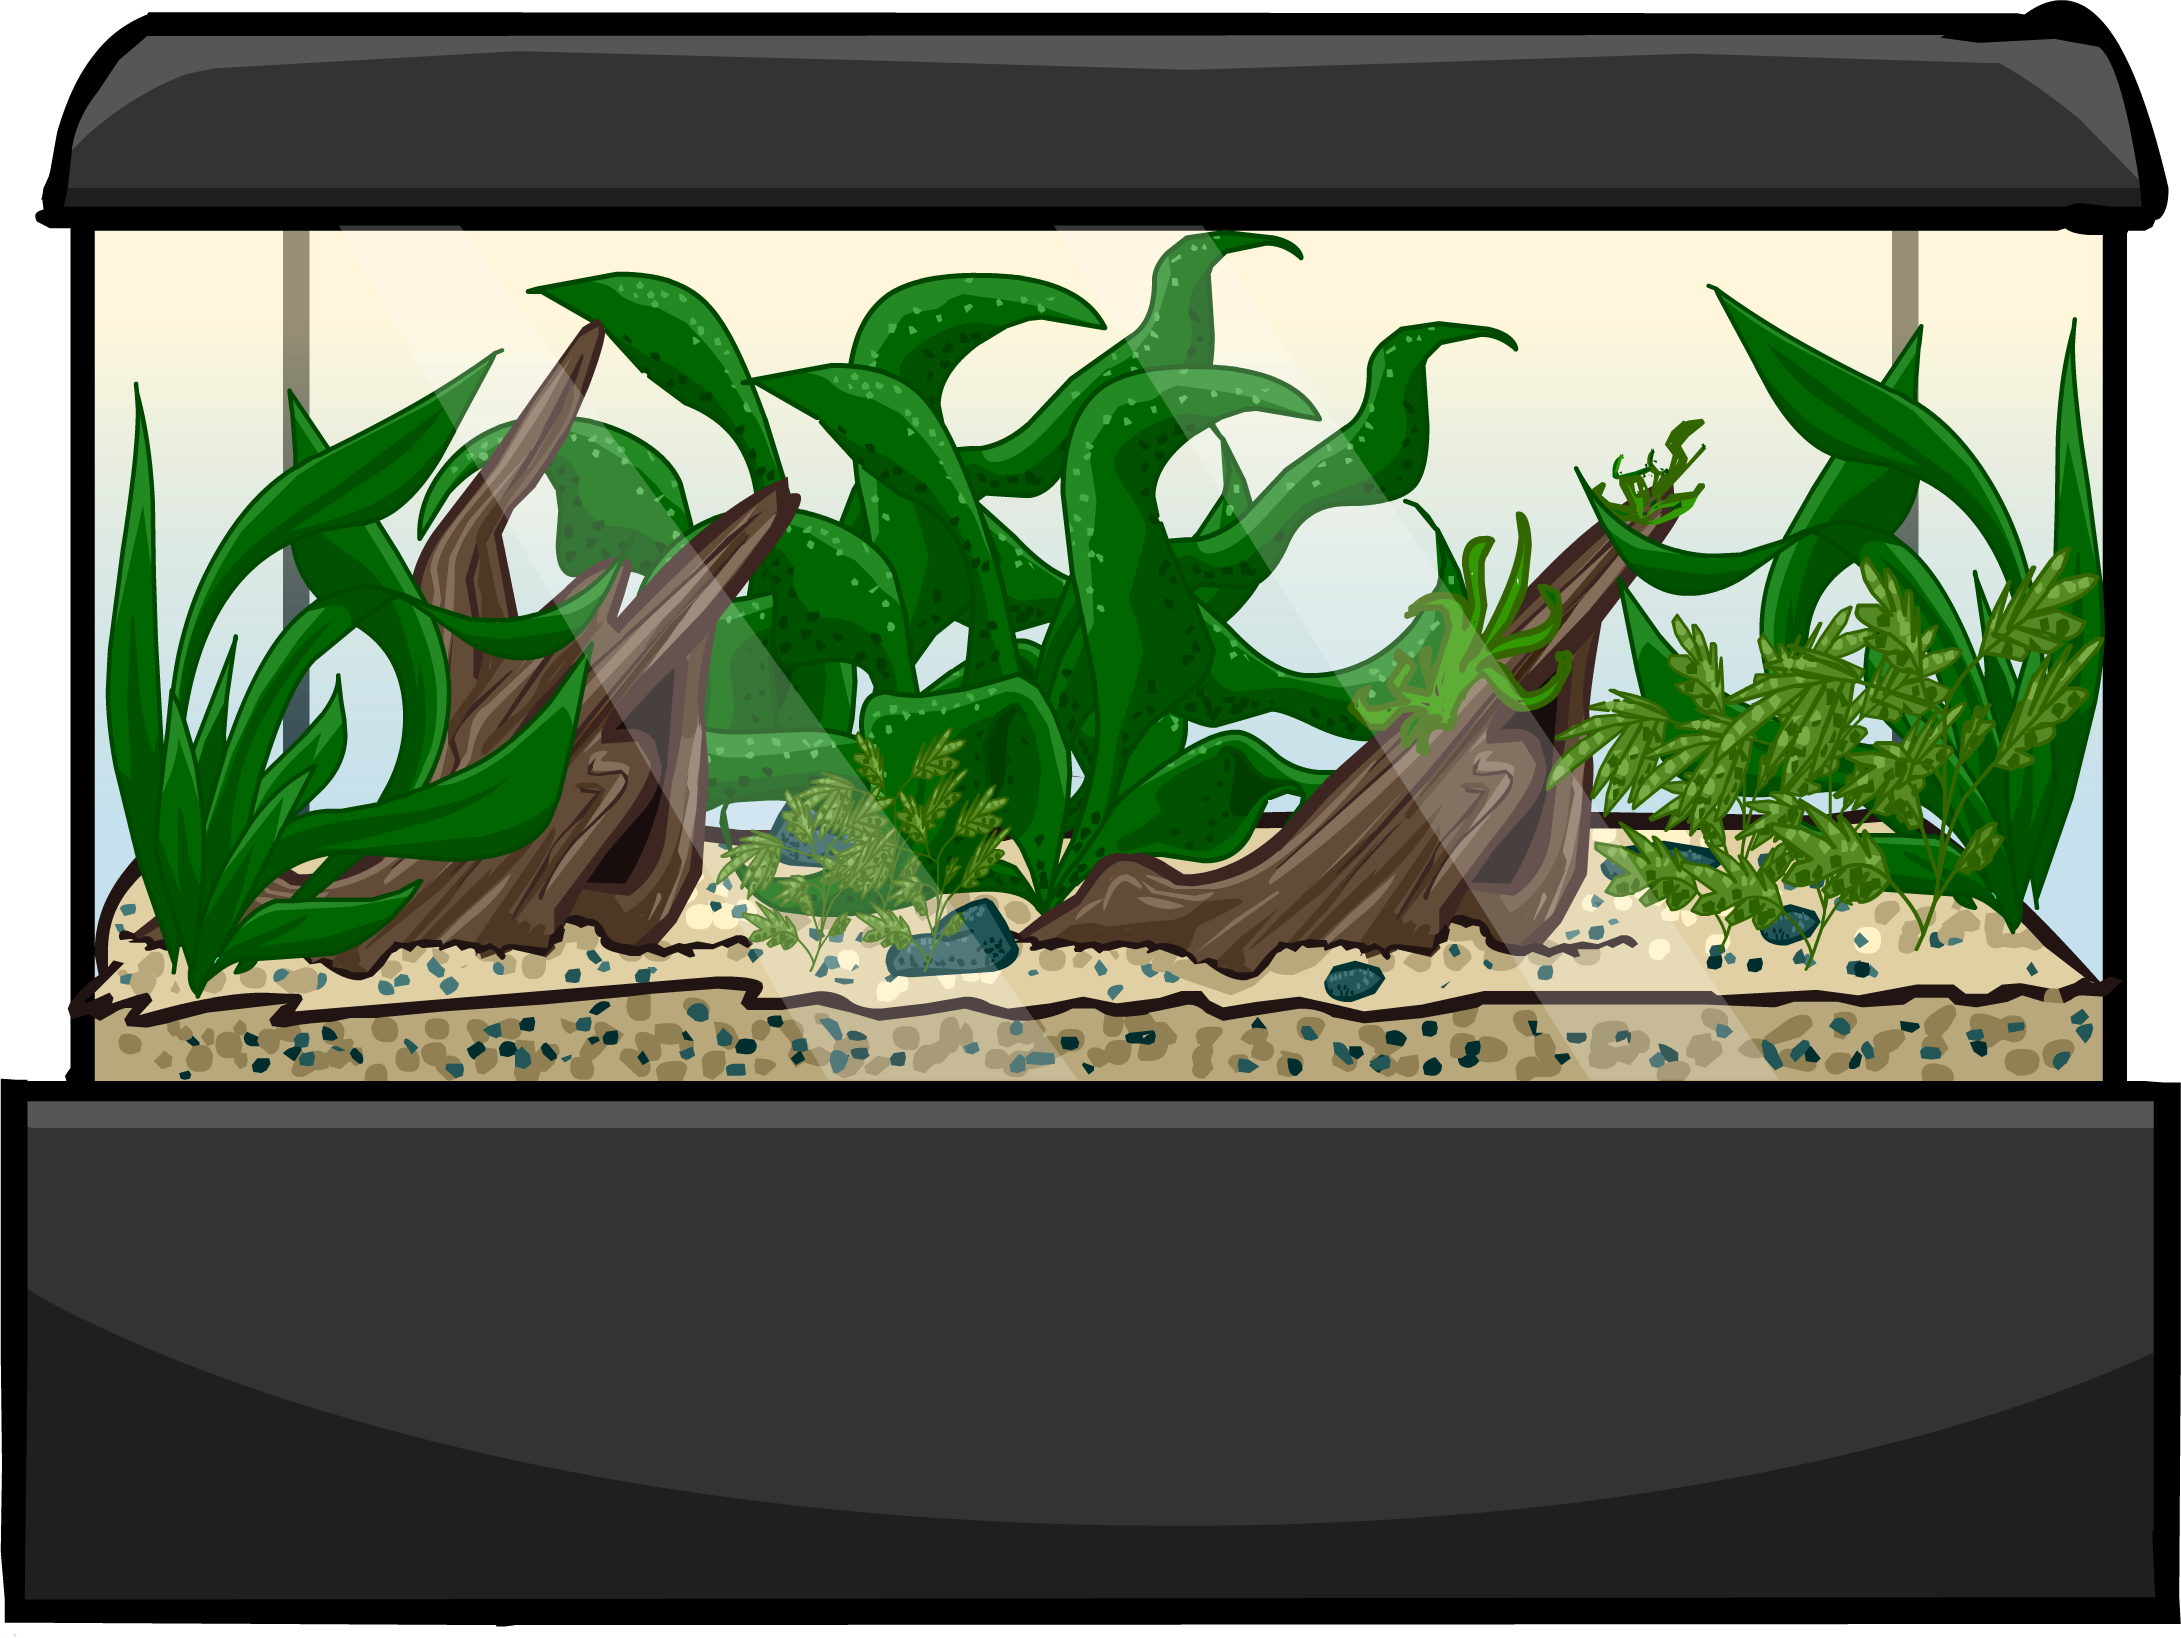 Akvaryum balık tankı PNG şeffaf resim